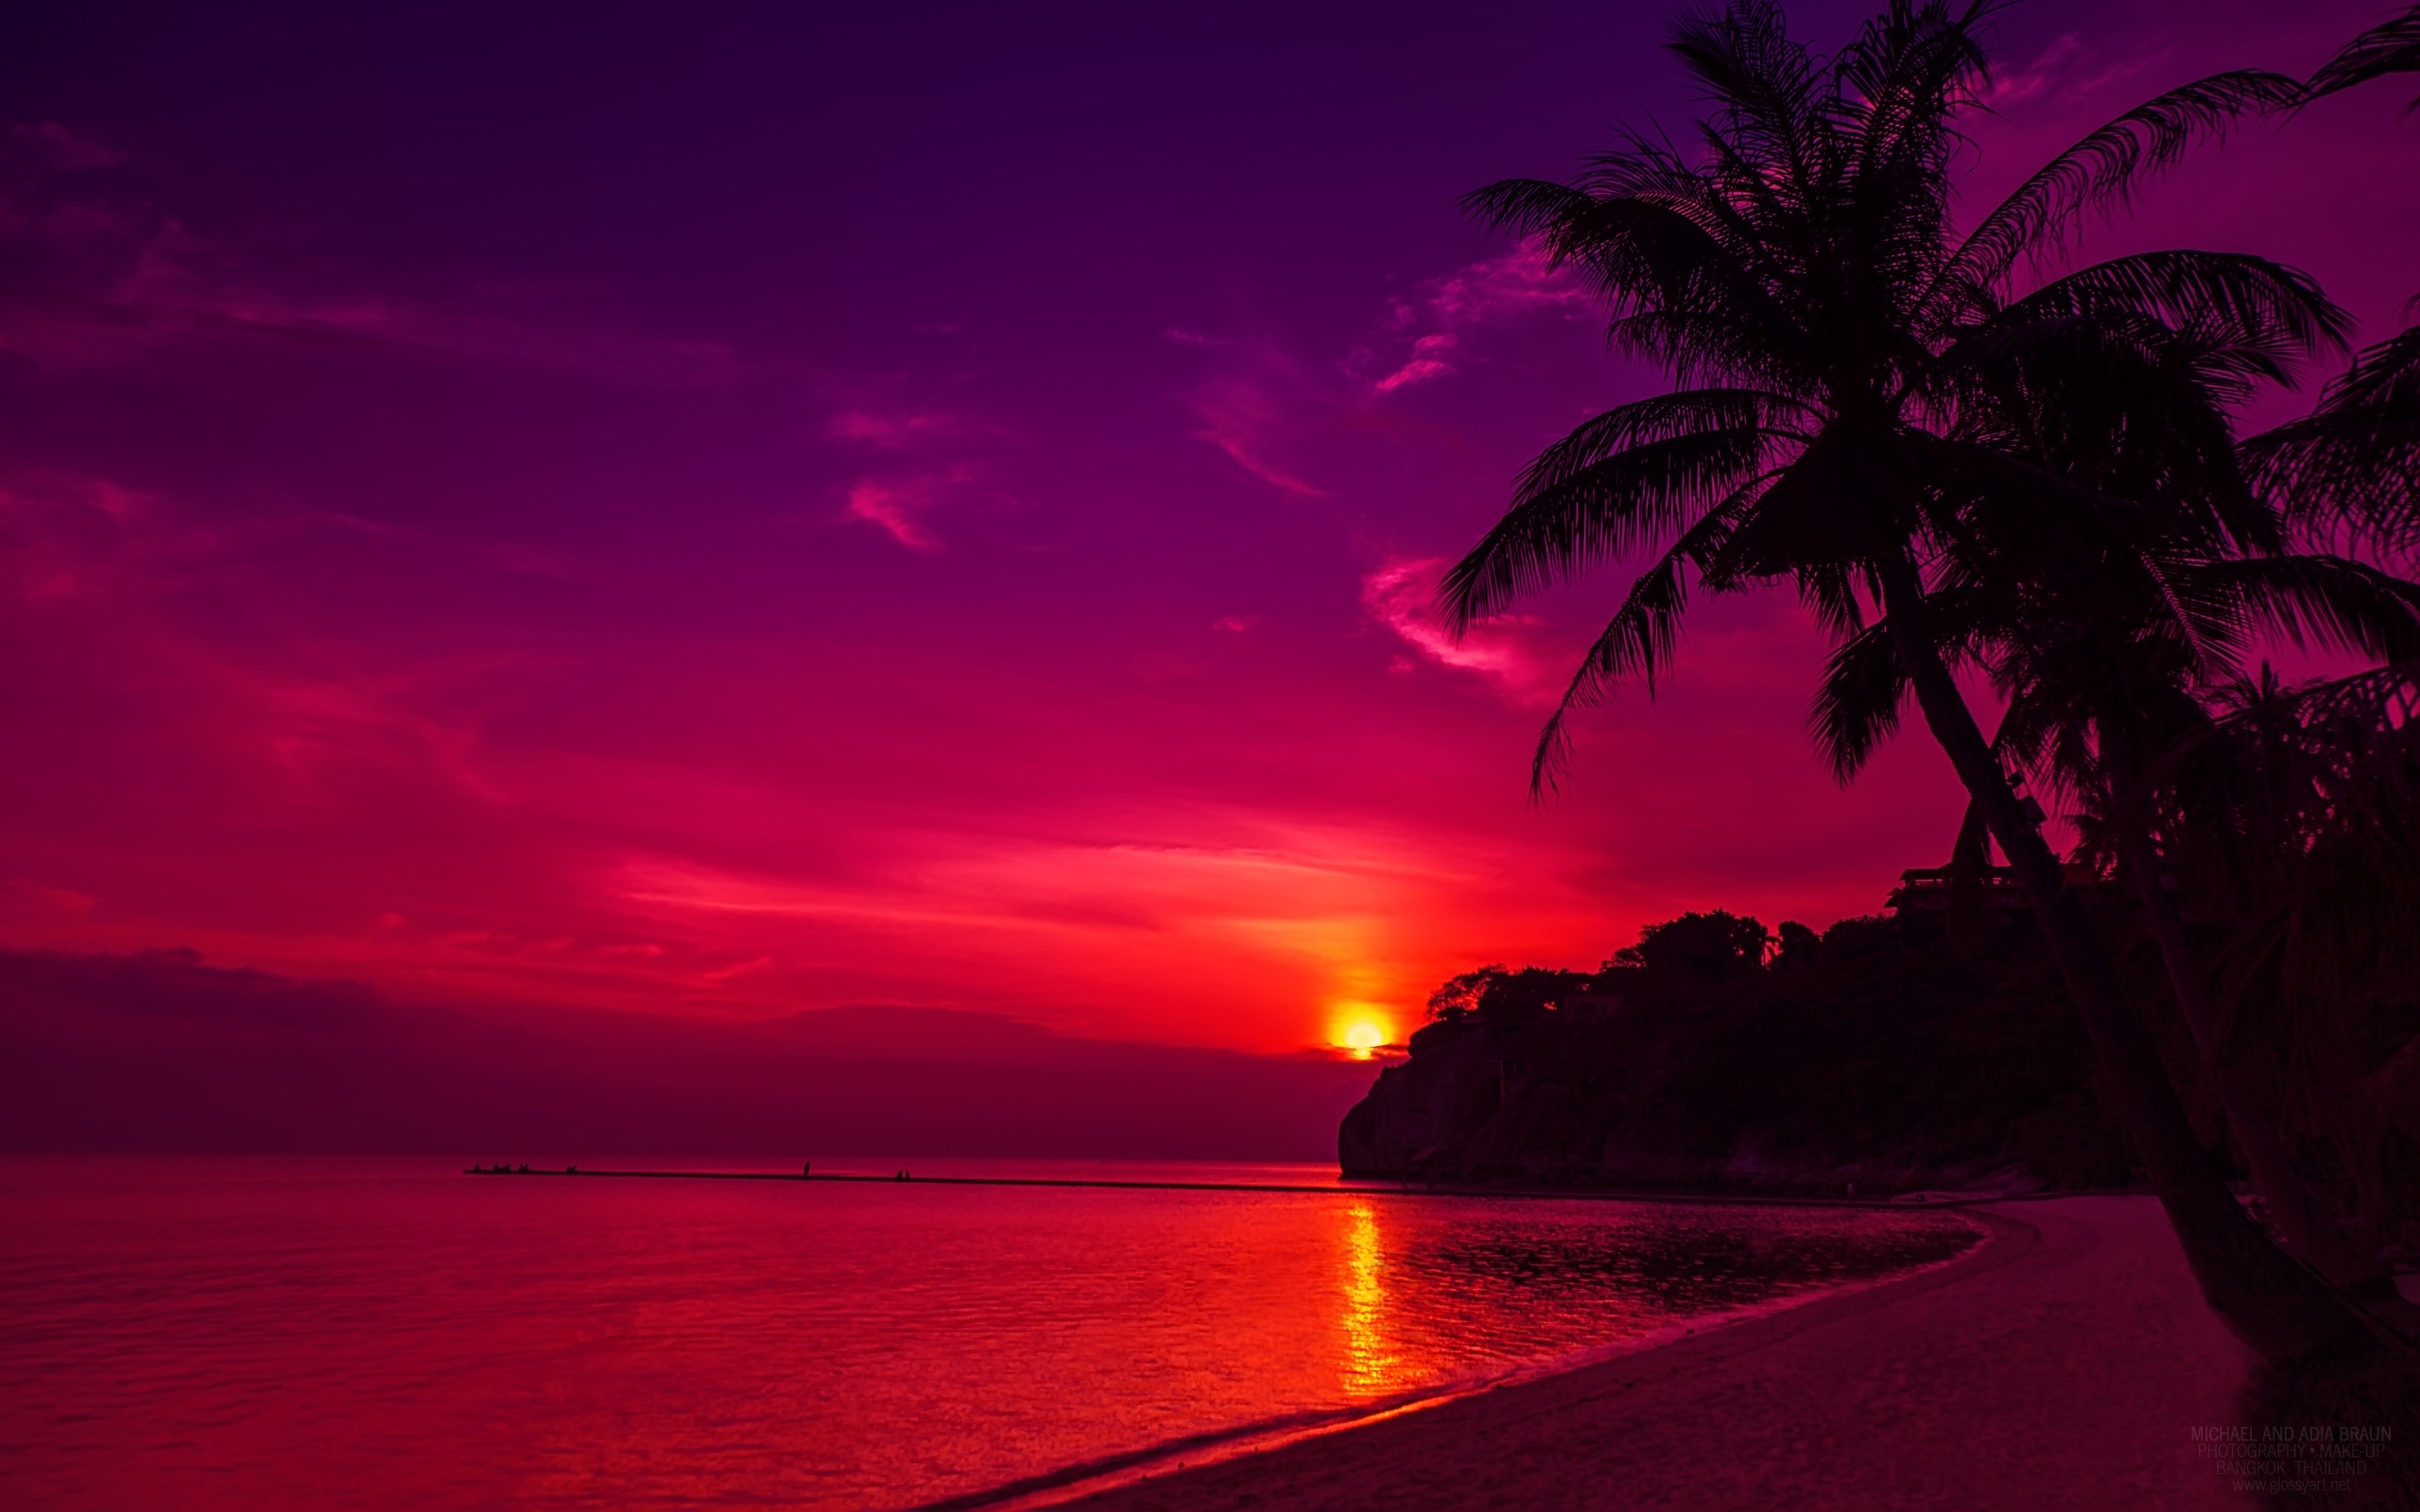 Hãy mang vẻ đẹp của bãi biển Thái Lan hoàng hôn vào màn hình máy tính của bạn với hình nền tuyệt đẹp này! Hình ảnh này sẽ cho bạn cảm nhận được vẻ đẹp của bầu trời khi chuyển từ nắng sang tối trên bãi biển Thái Lan. Tải hình nền bãi biển hoàng hôn Thái Lan để có một nguồn cảm hứng hữu ích và tăng sự tập trung vào công việc, học tập và giải trí của bạn.